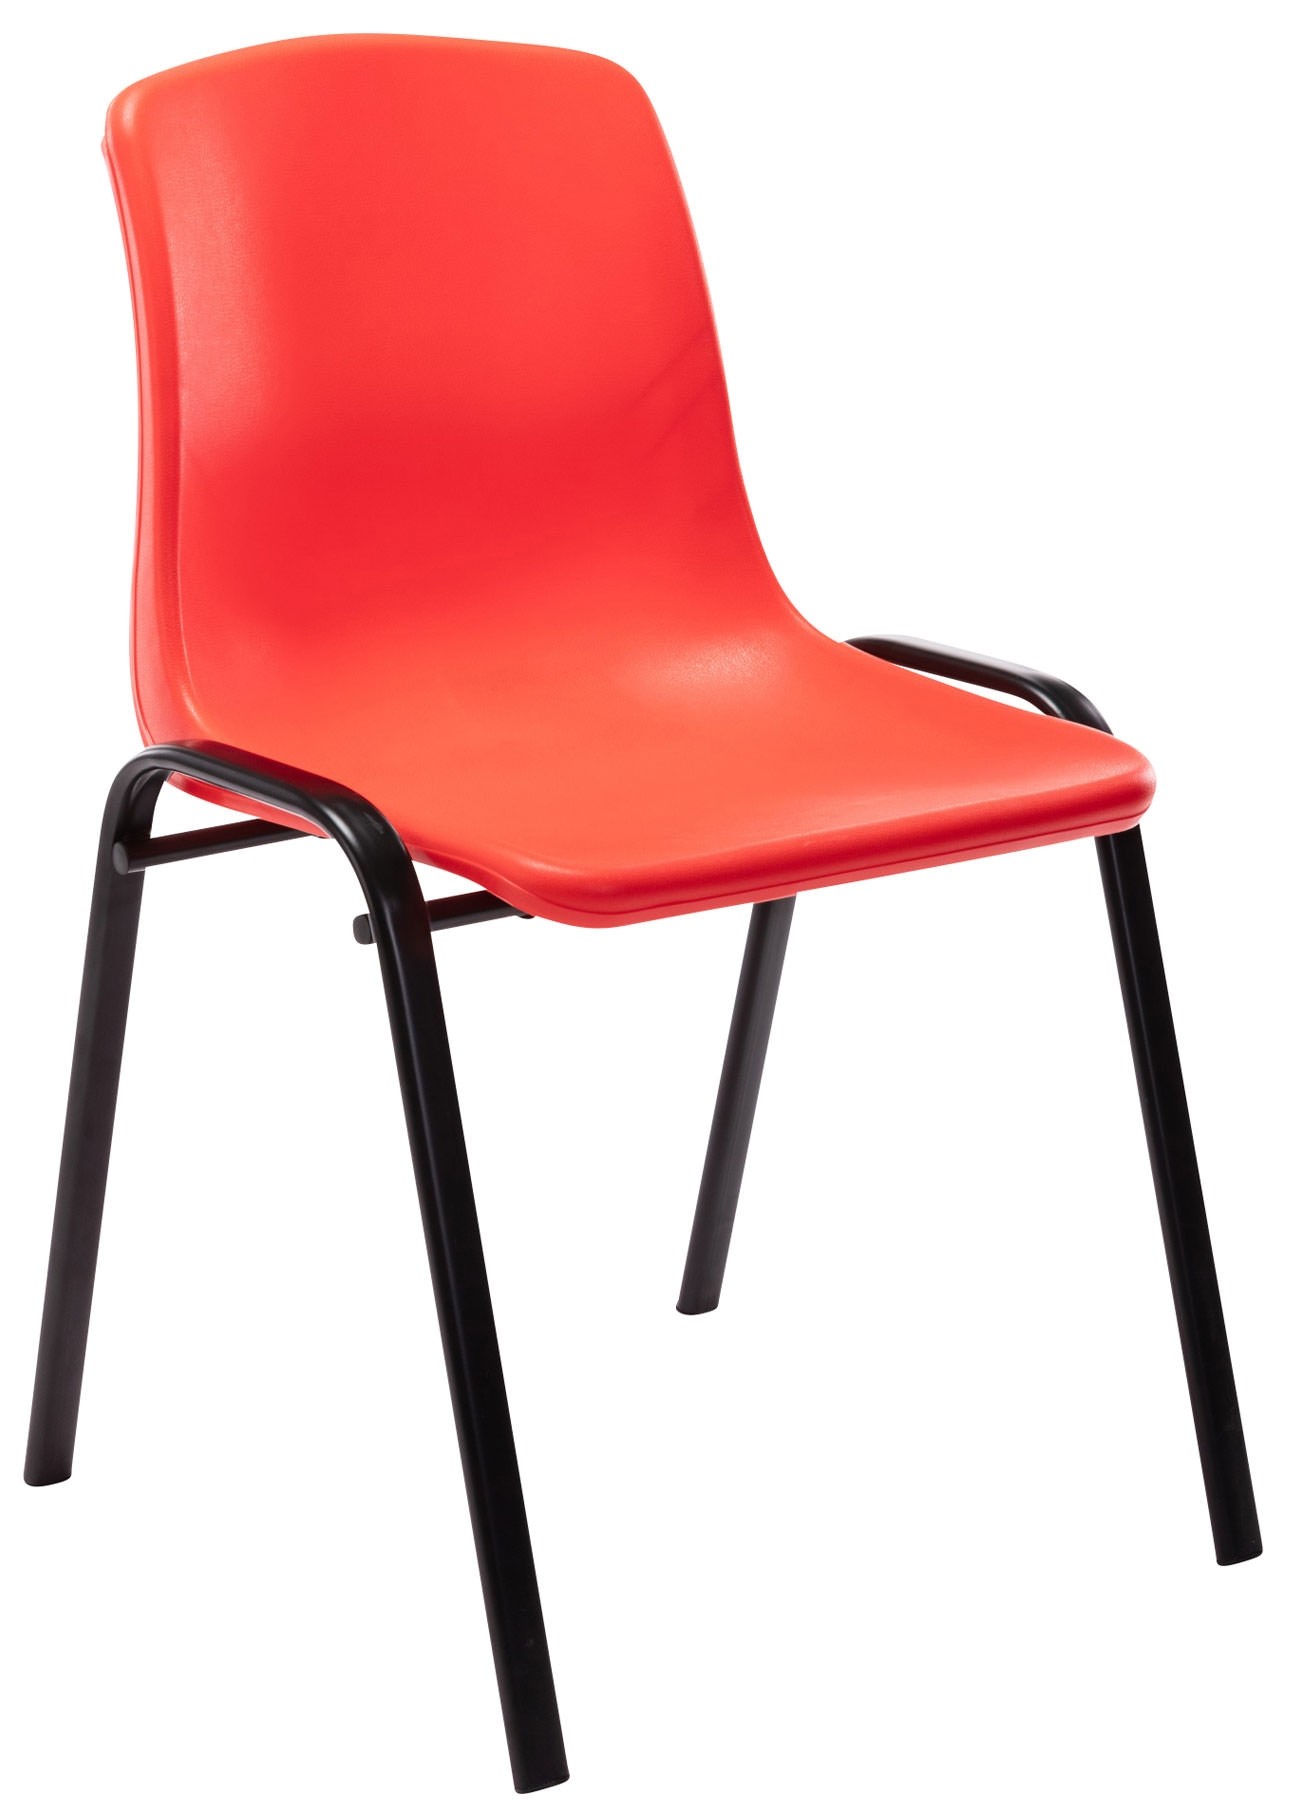 Chaise empilable Nowra avec assise en plastique et piètement en métal noir mat